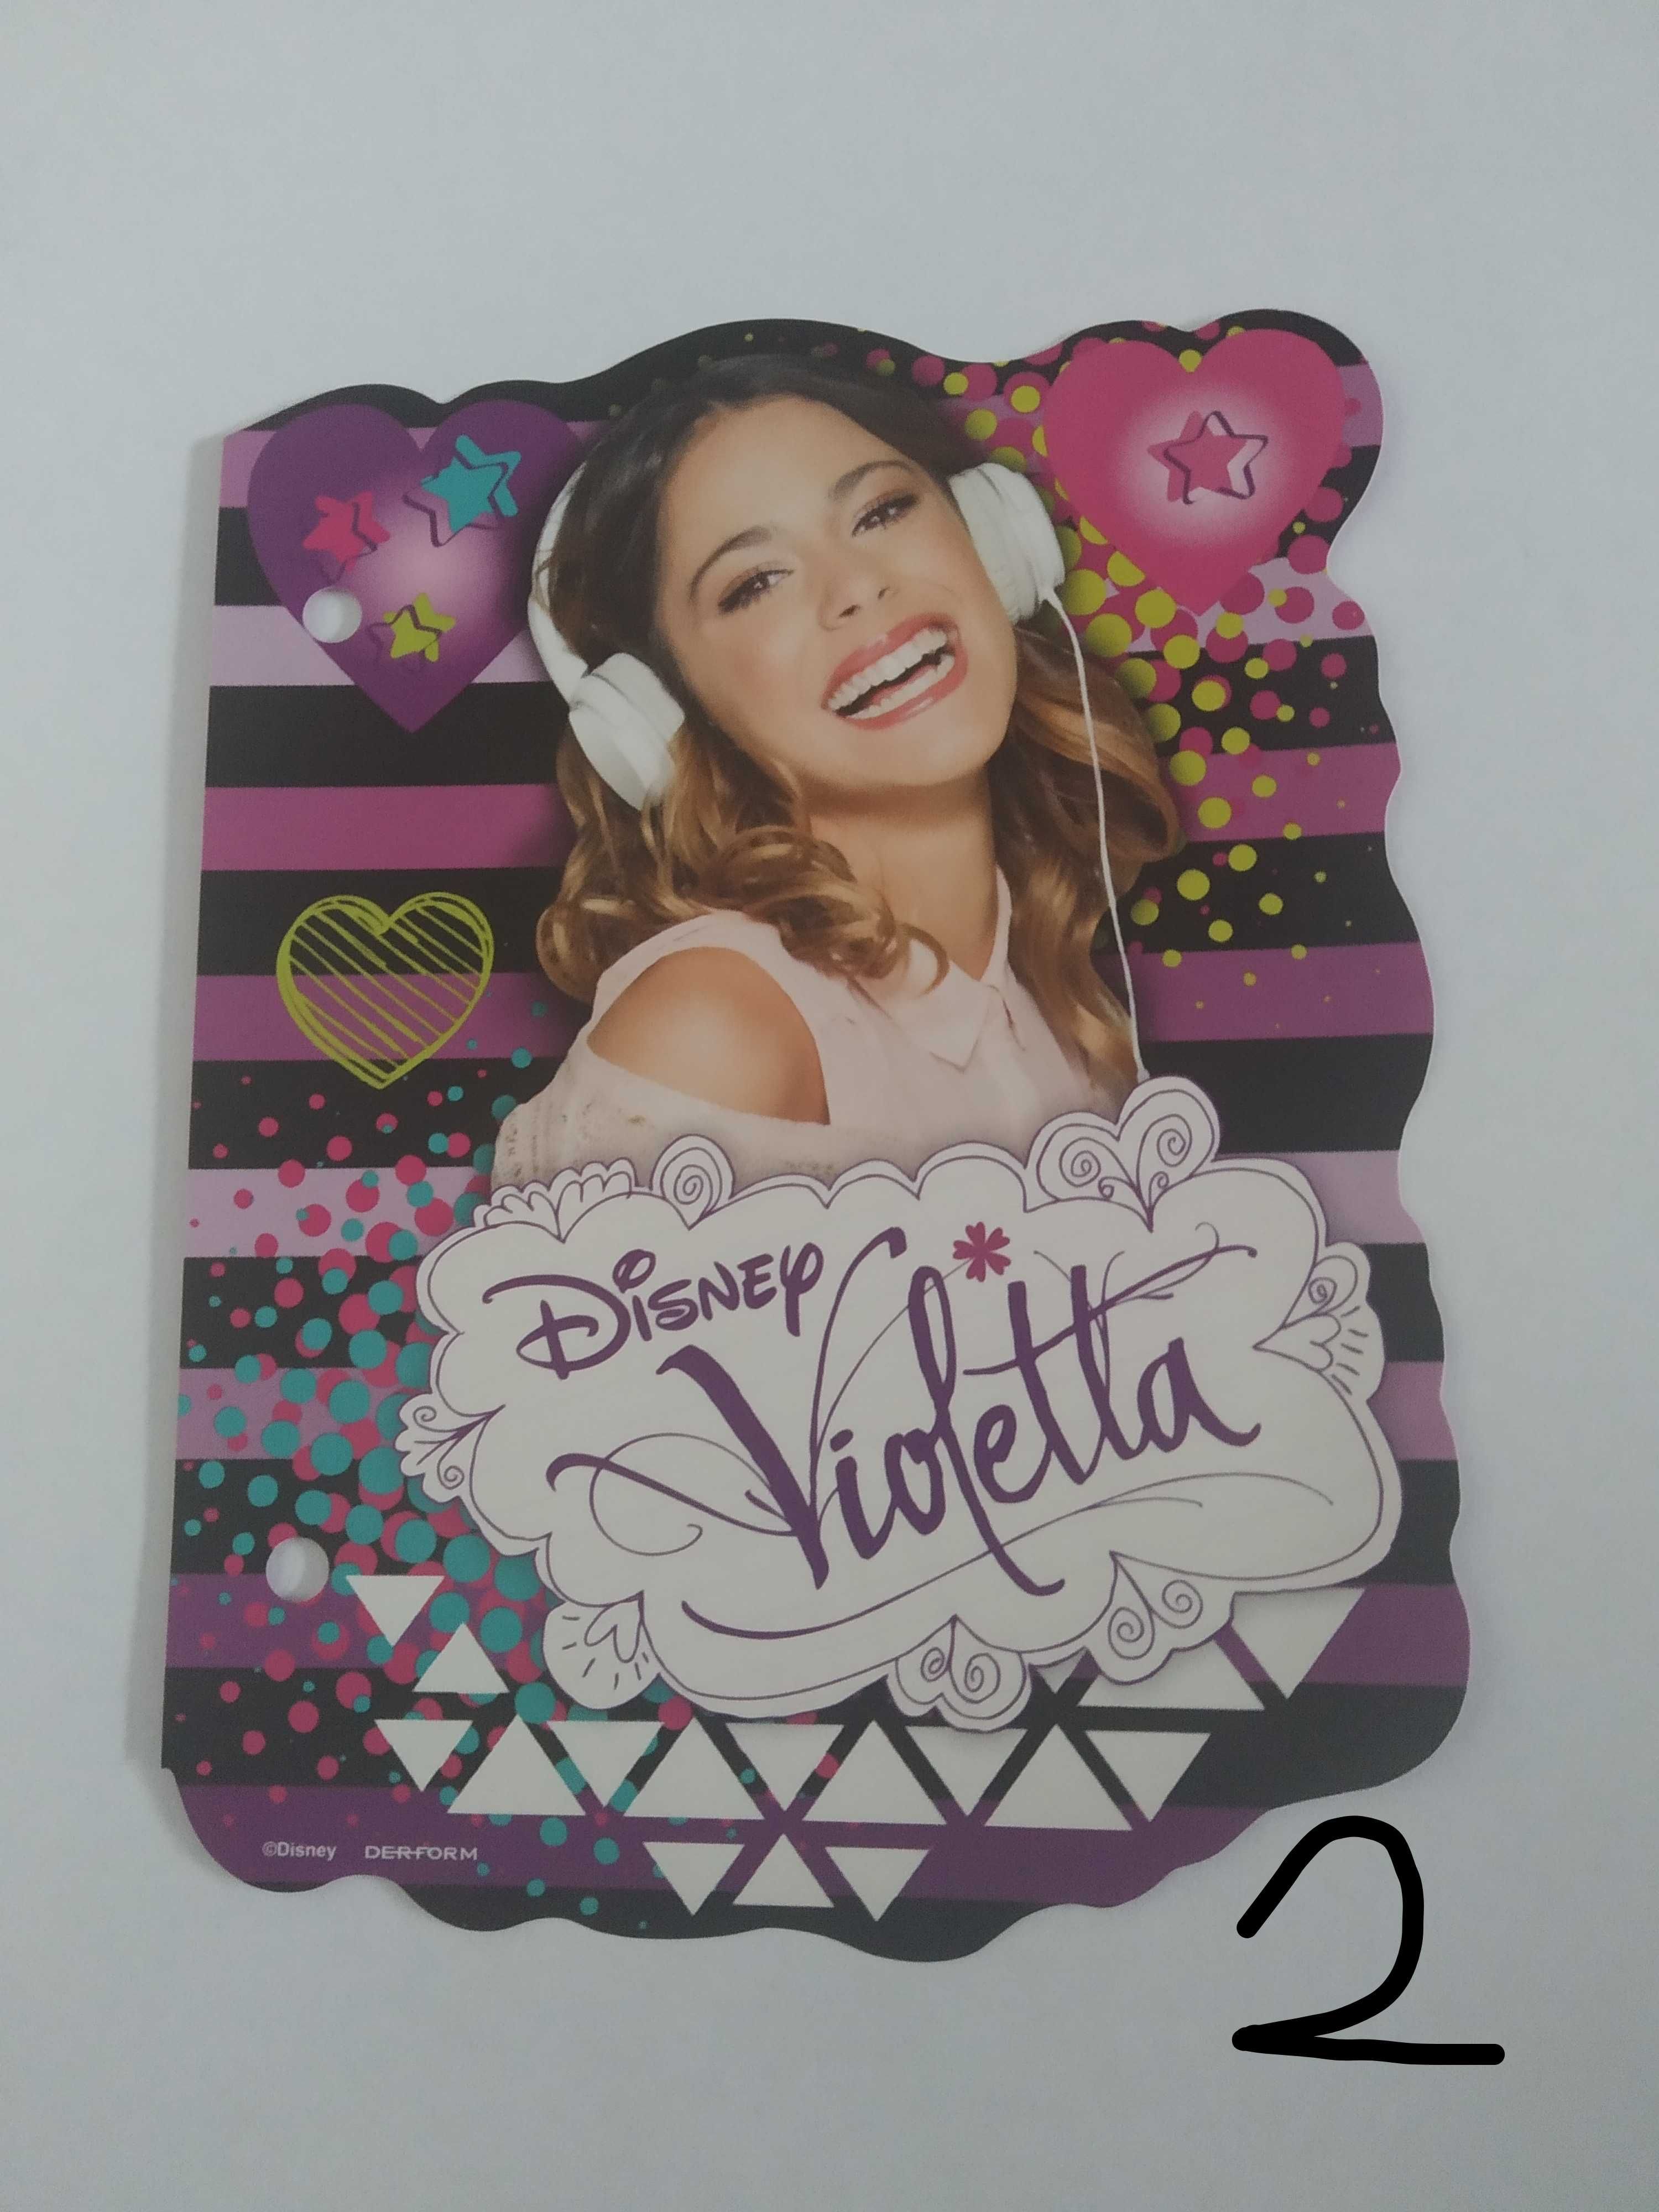 Karteczki kolekcjonerskie Violetta